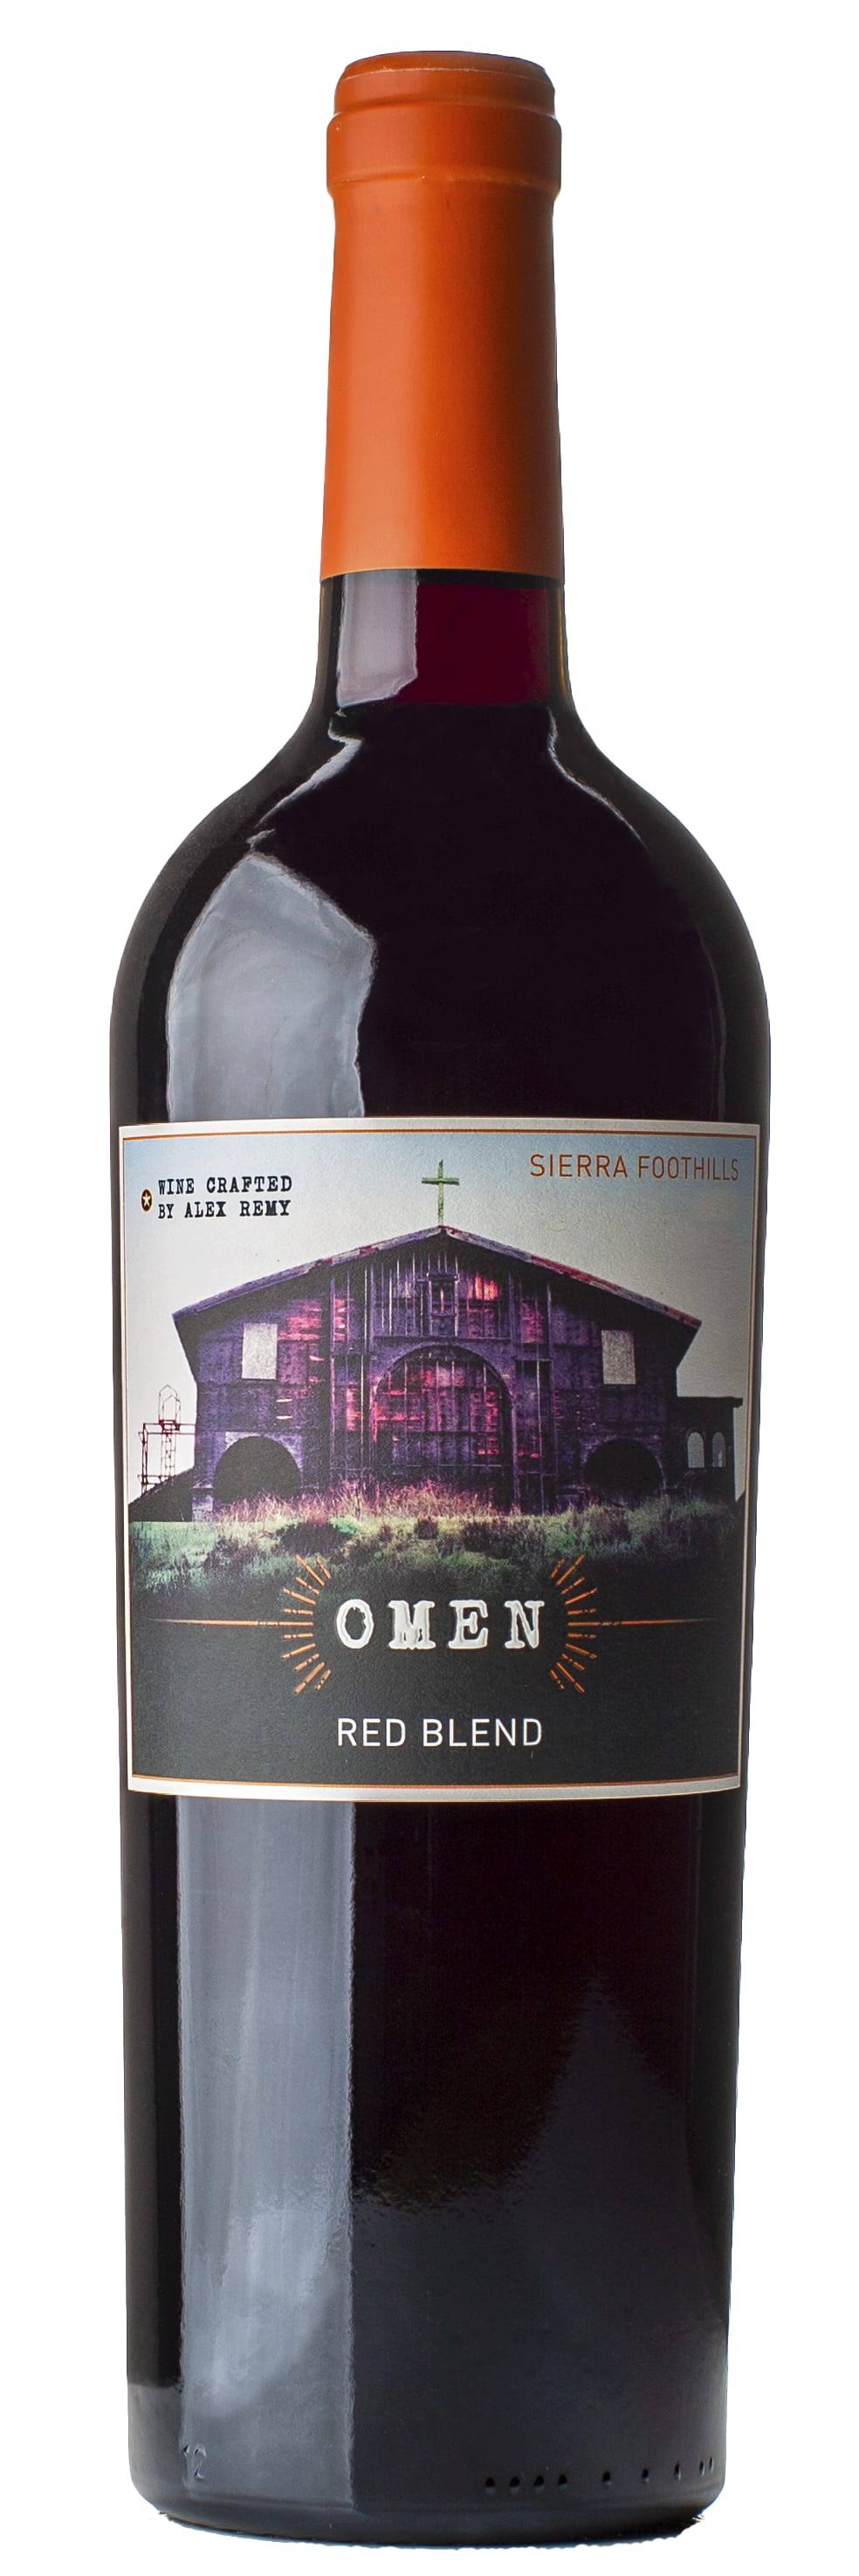 Omen Sierra Foothills Red Blend - 750 ml